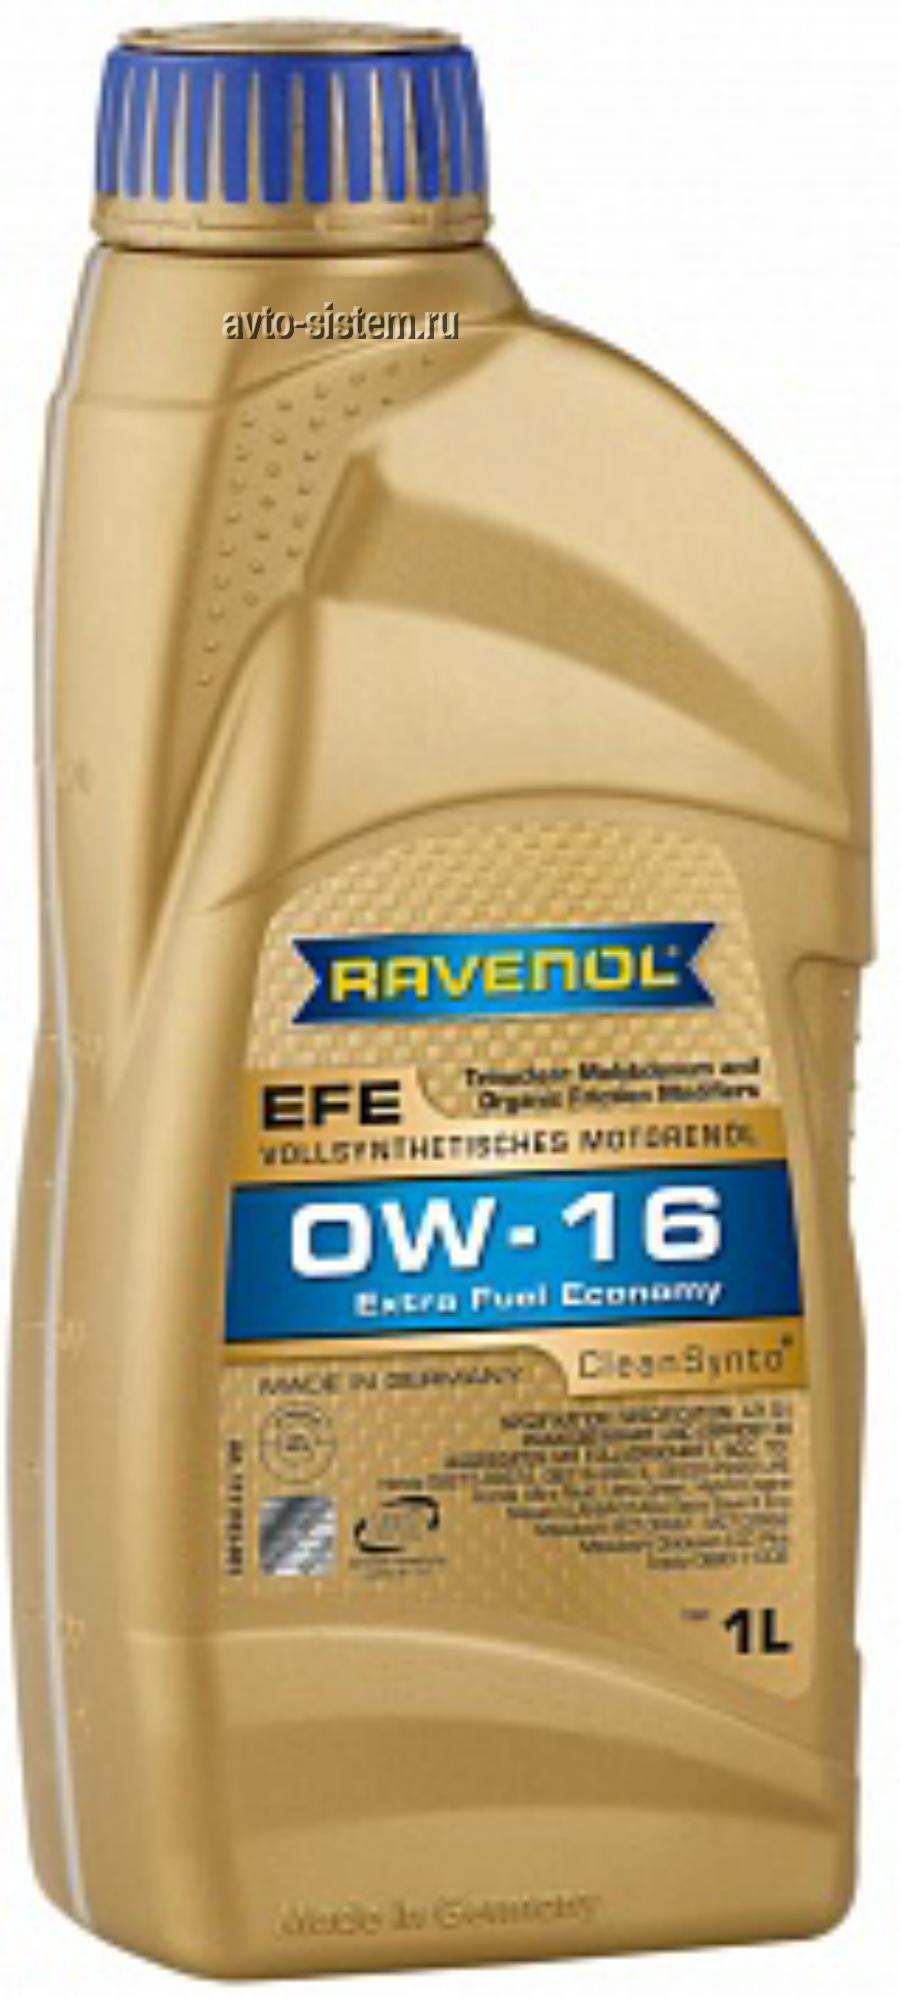 111110300101999 RAVENOL Полностью cинтетическое легкотекучее моторное масло с запатентованной технологией clean-synto для легковых бензиновых и дизельны